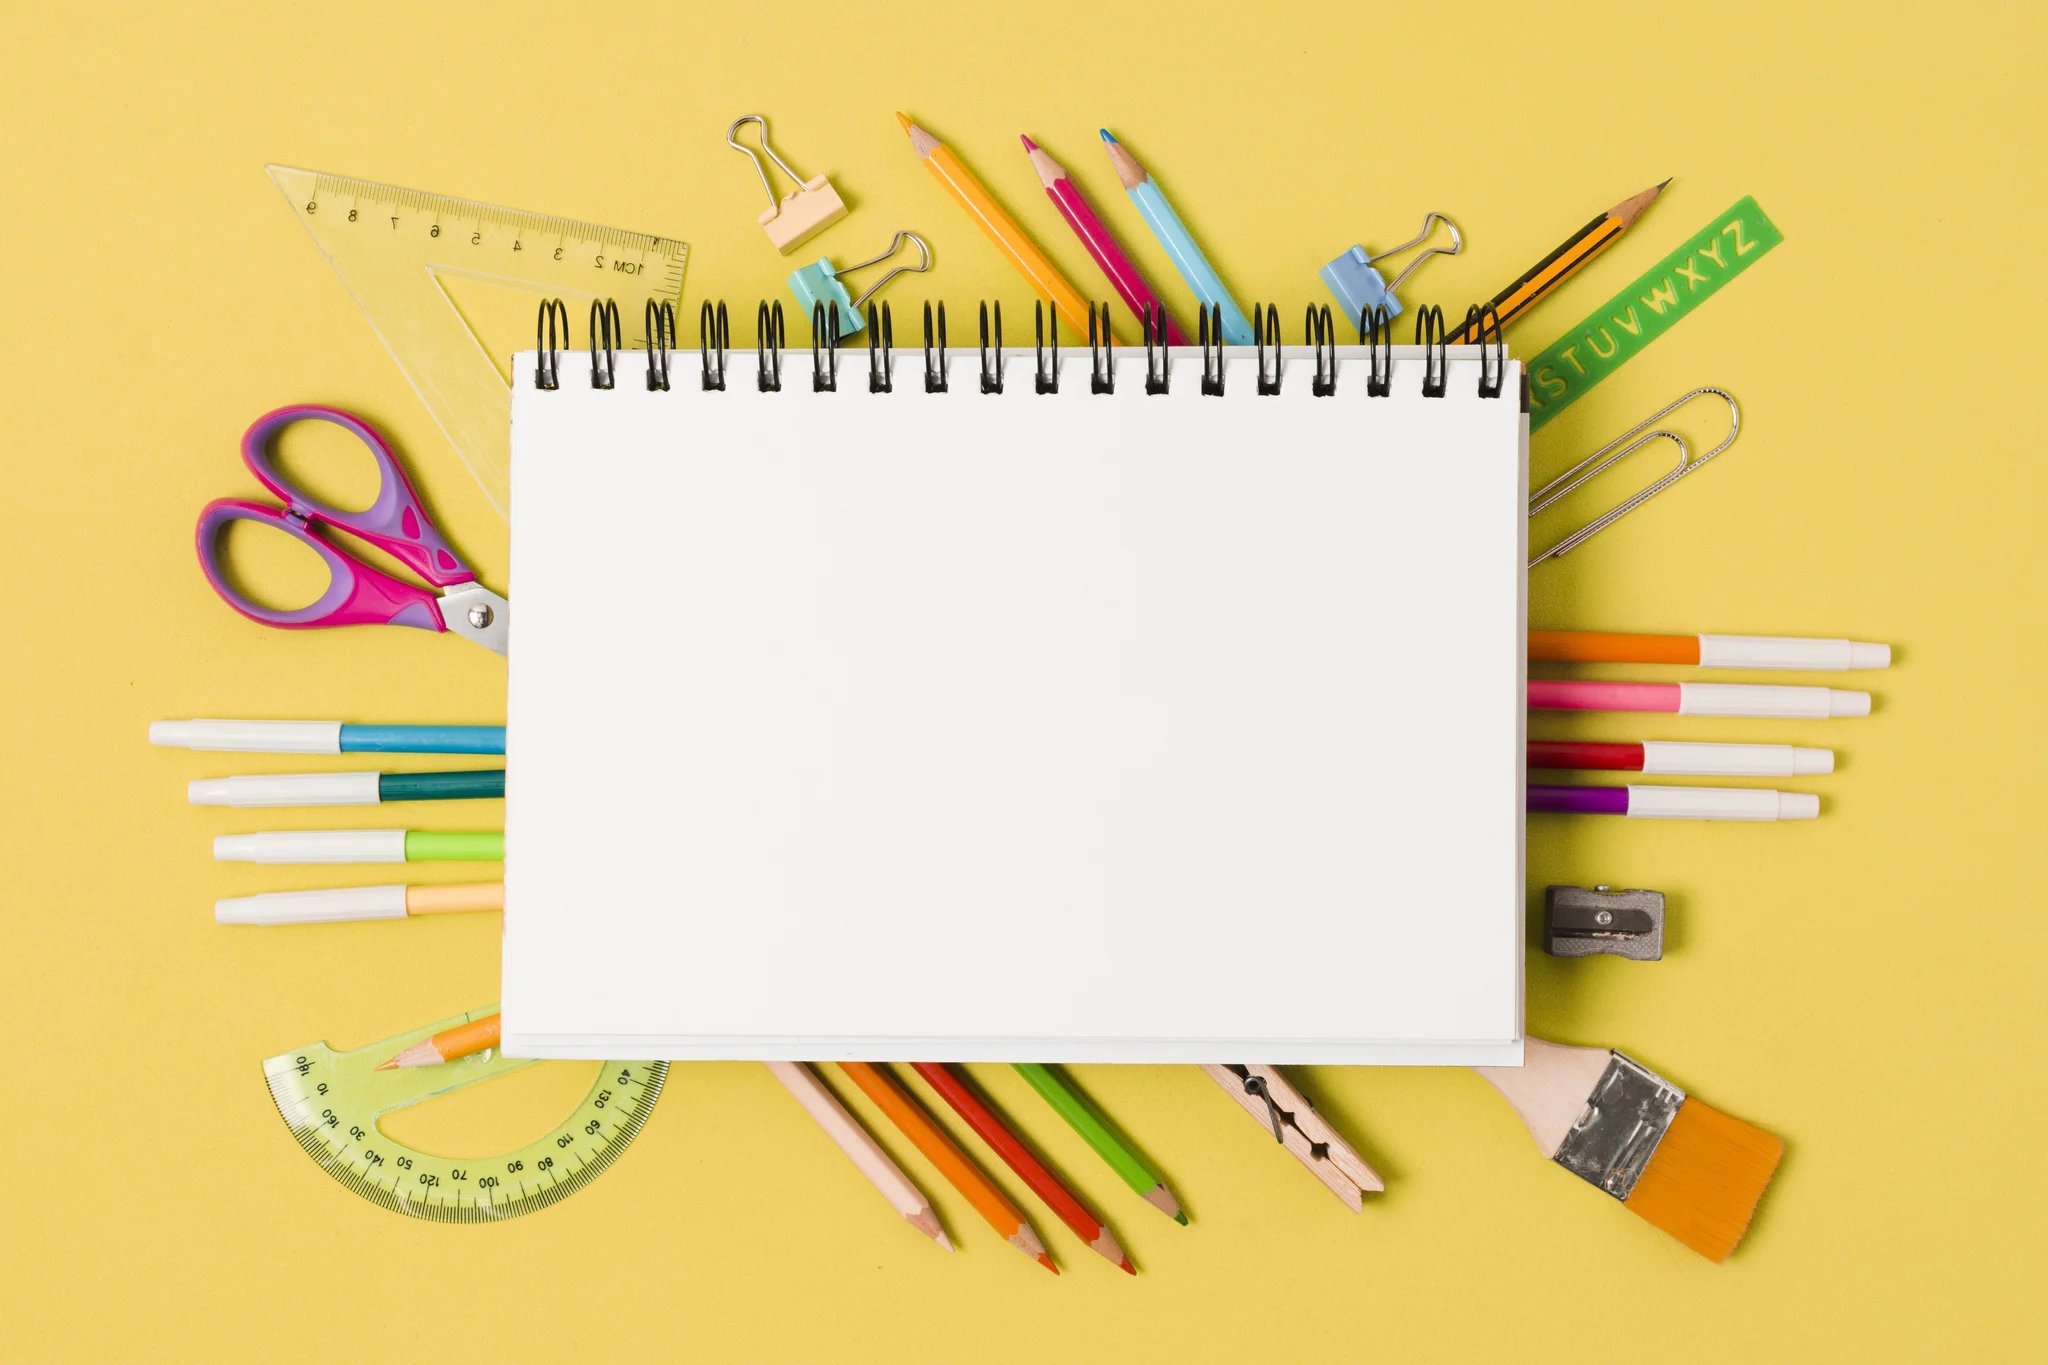 Caderno rodeado por canetinhas, lápis, tesoura e entre outros matérias escolares